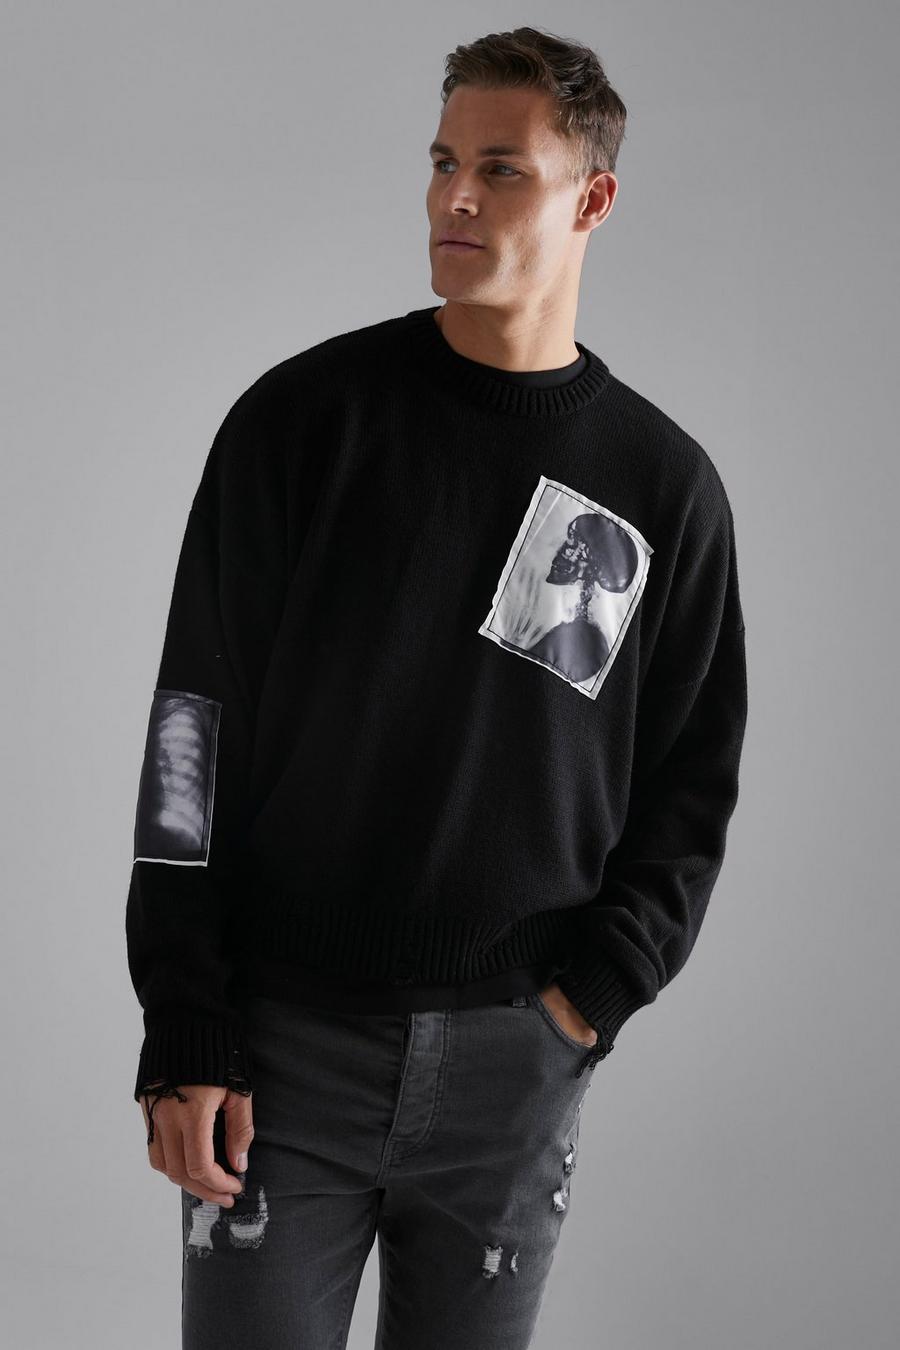 שחור black סוודר בגזרה מרובעת עם קרעים והדפס תמונה, לגברים גבוהים